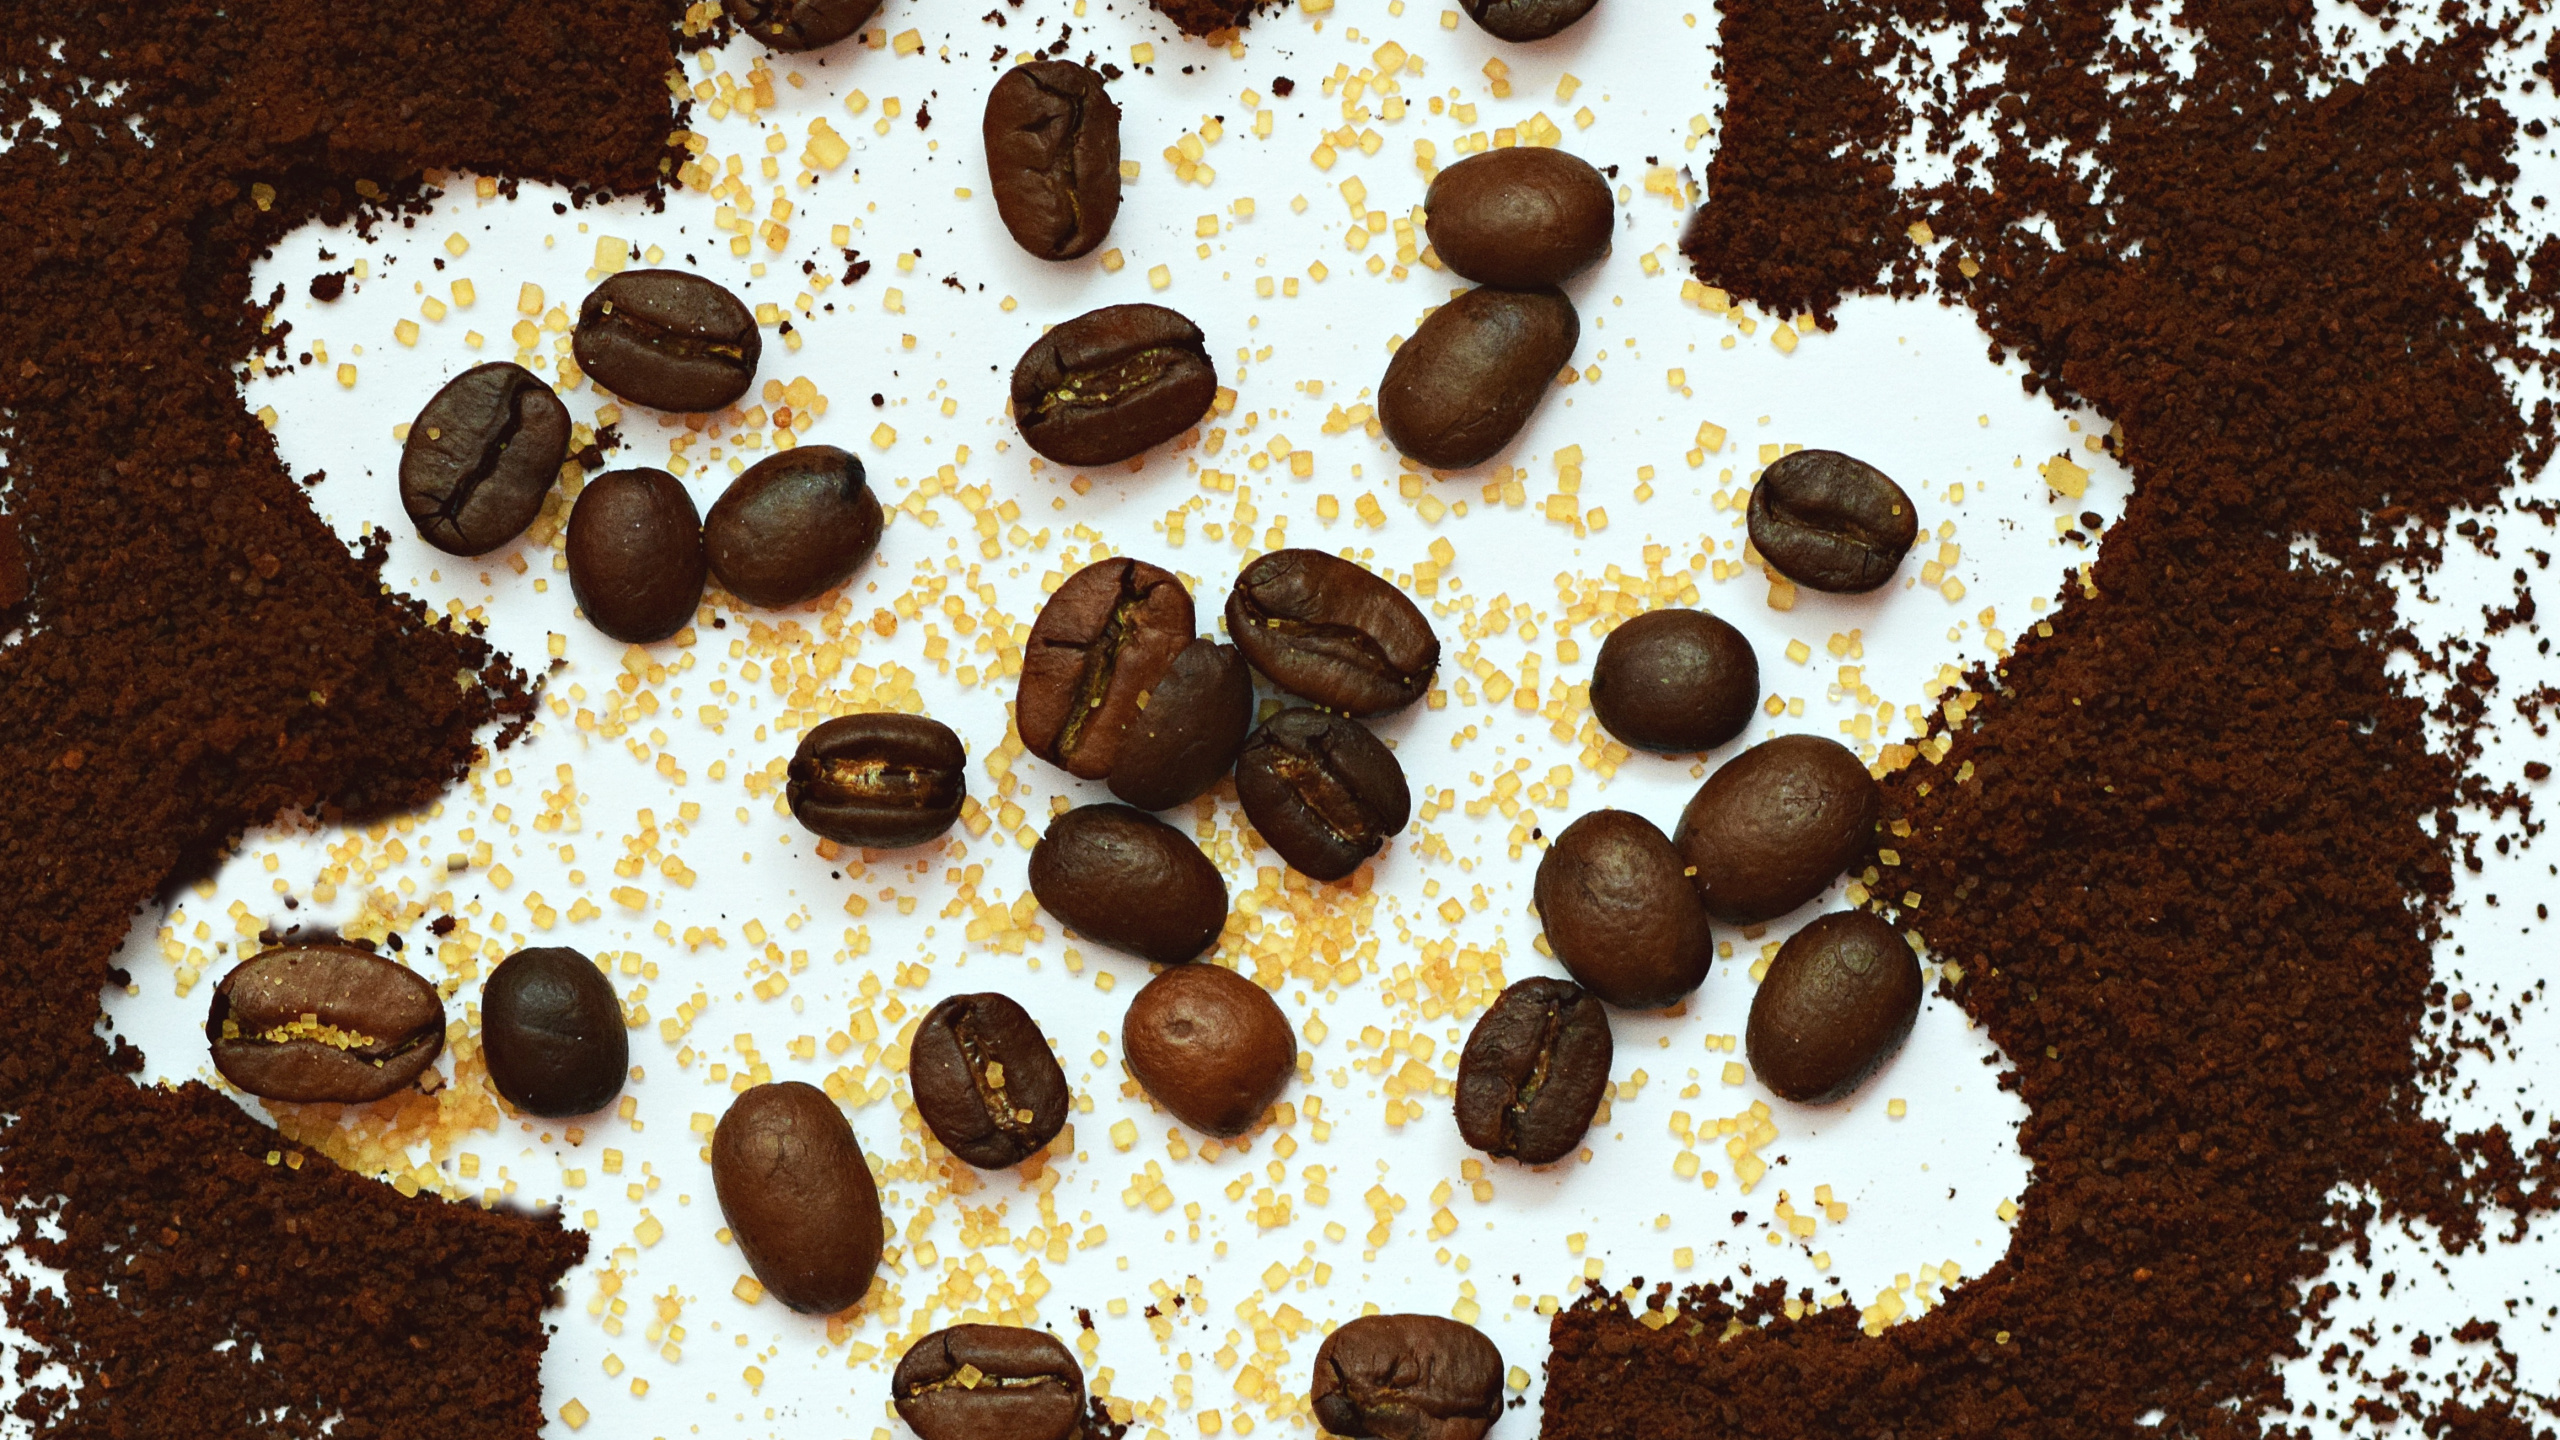 咖啡豆, 食品, 巧克力, 甜点, 巧克力芯片 壁纸 2560x1440 允许